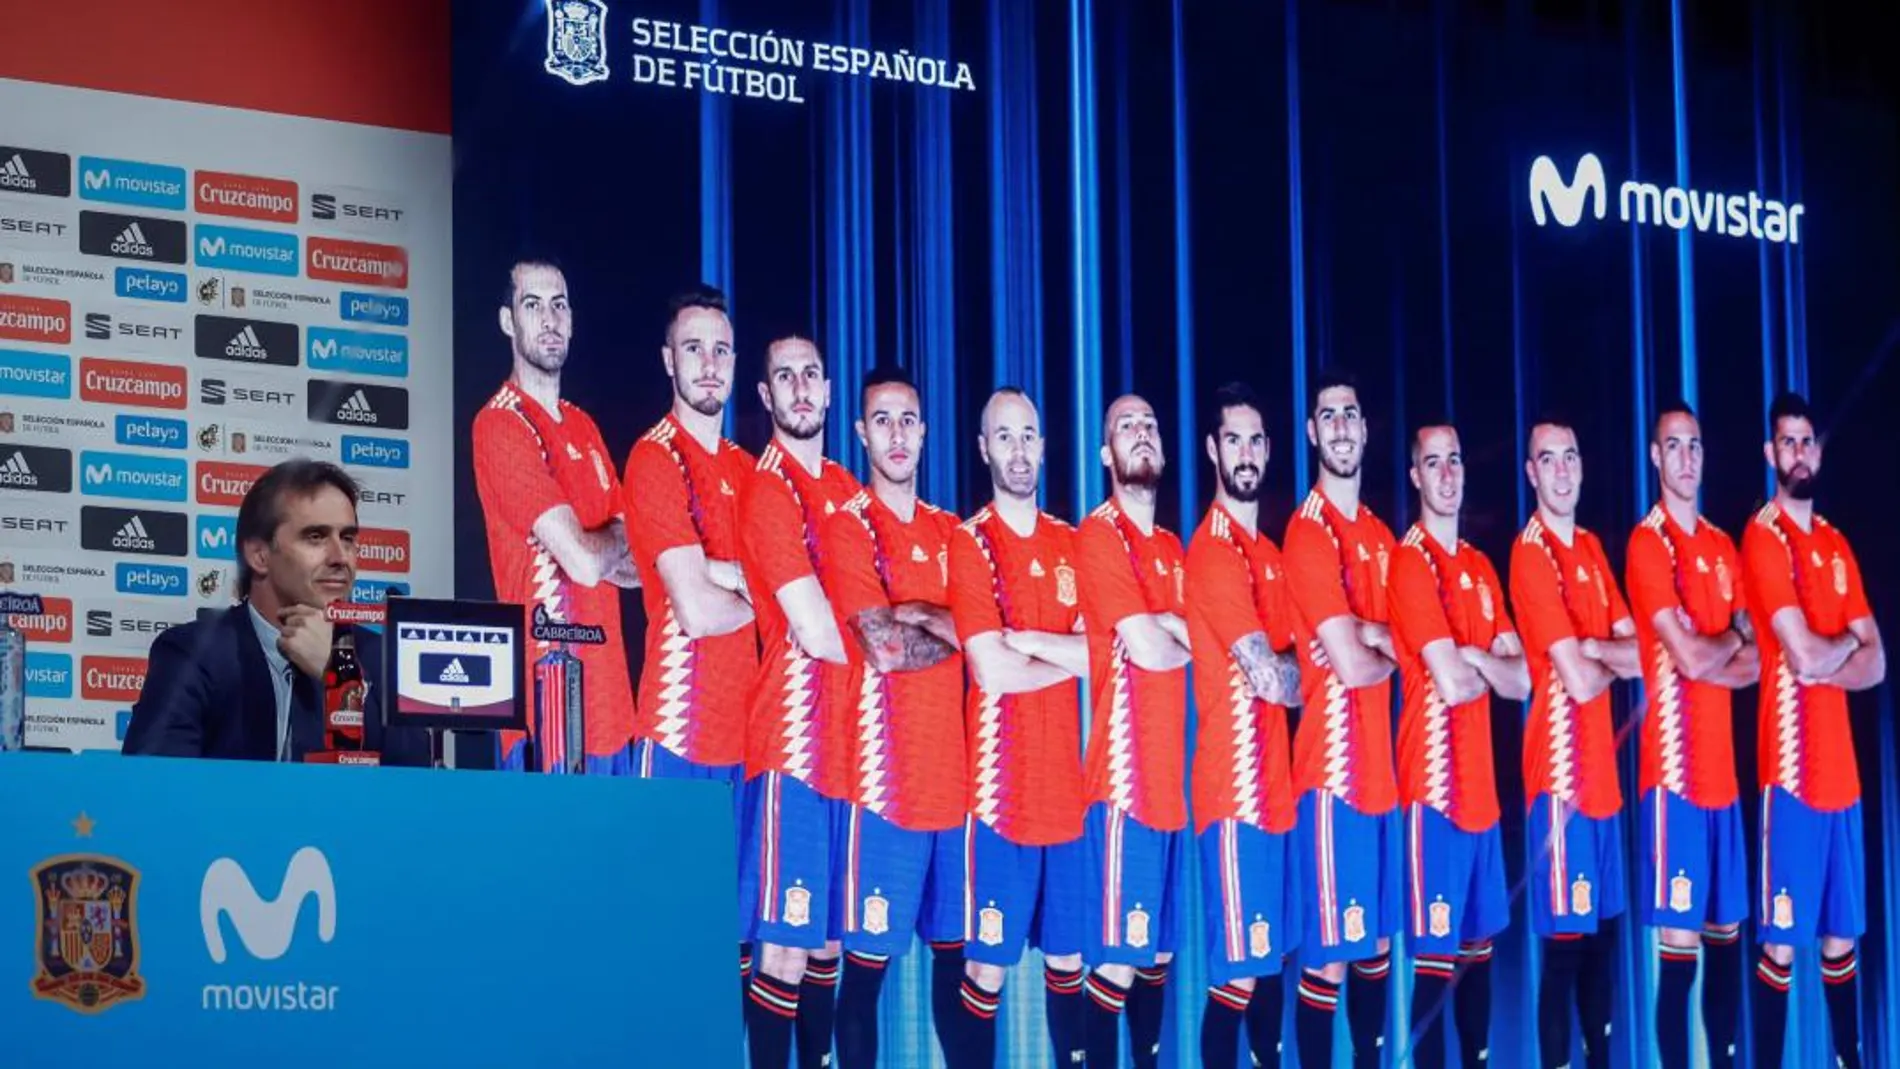 El seleccionador nacional de fútbol, Julen Lopetegui, anuncia la lista de jugadores para el Mundial de Rusia, entre los que está Pepe Reina